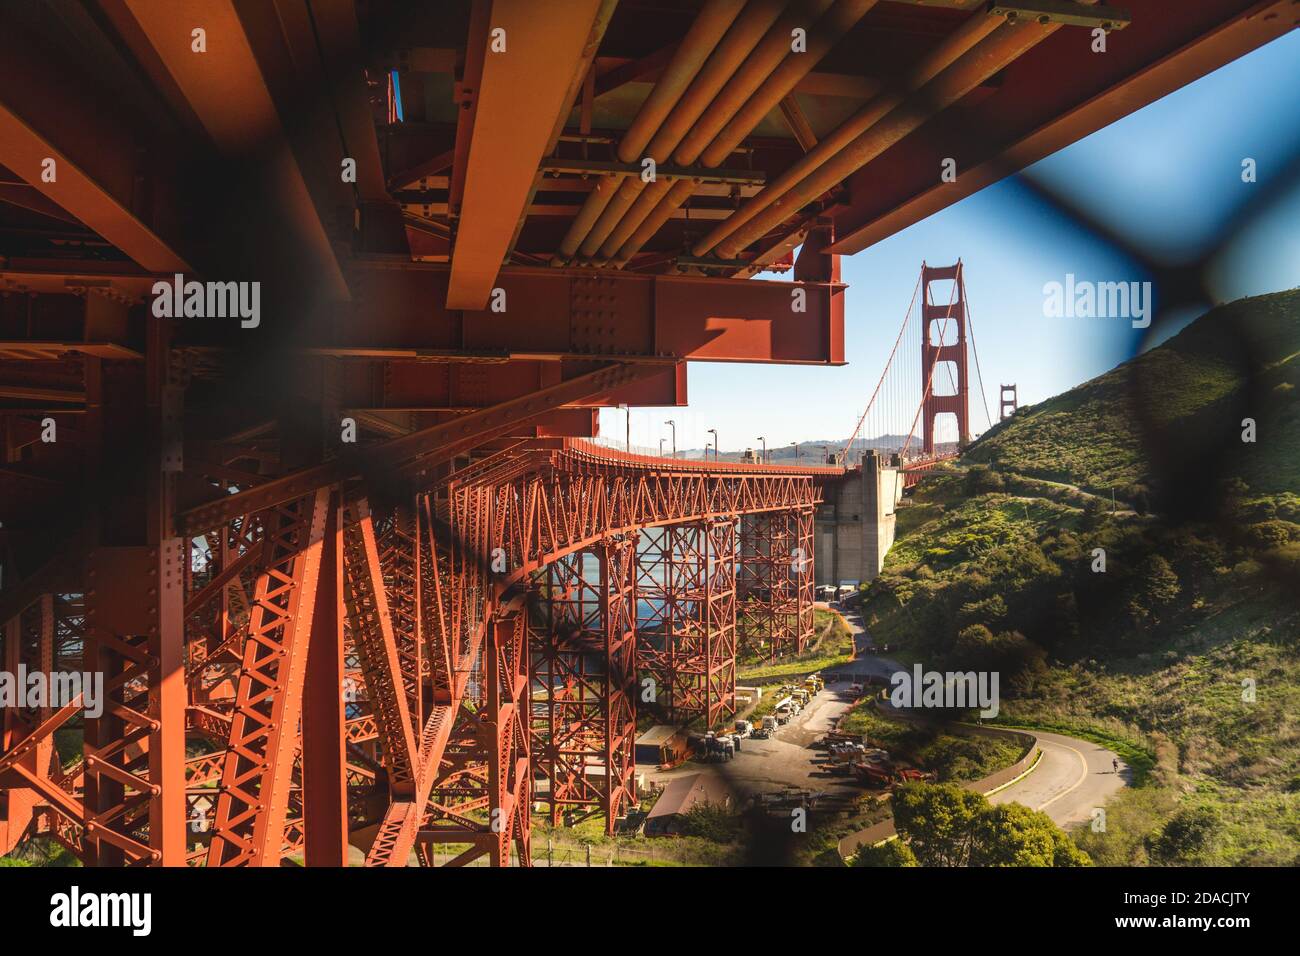 Vue unique et originale du célèbre Golden Gate Bridge de San Francisco, Californie, États-Unis à la lumière du jour Banque D'Images